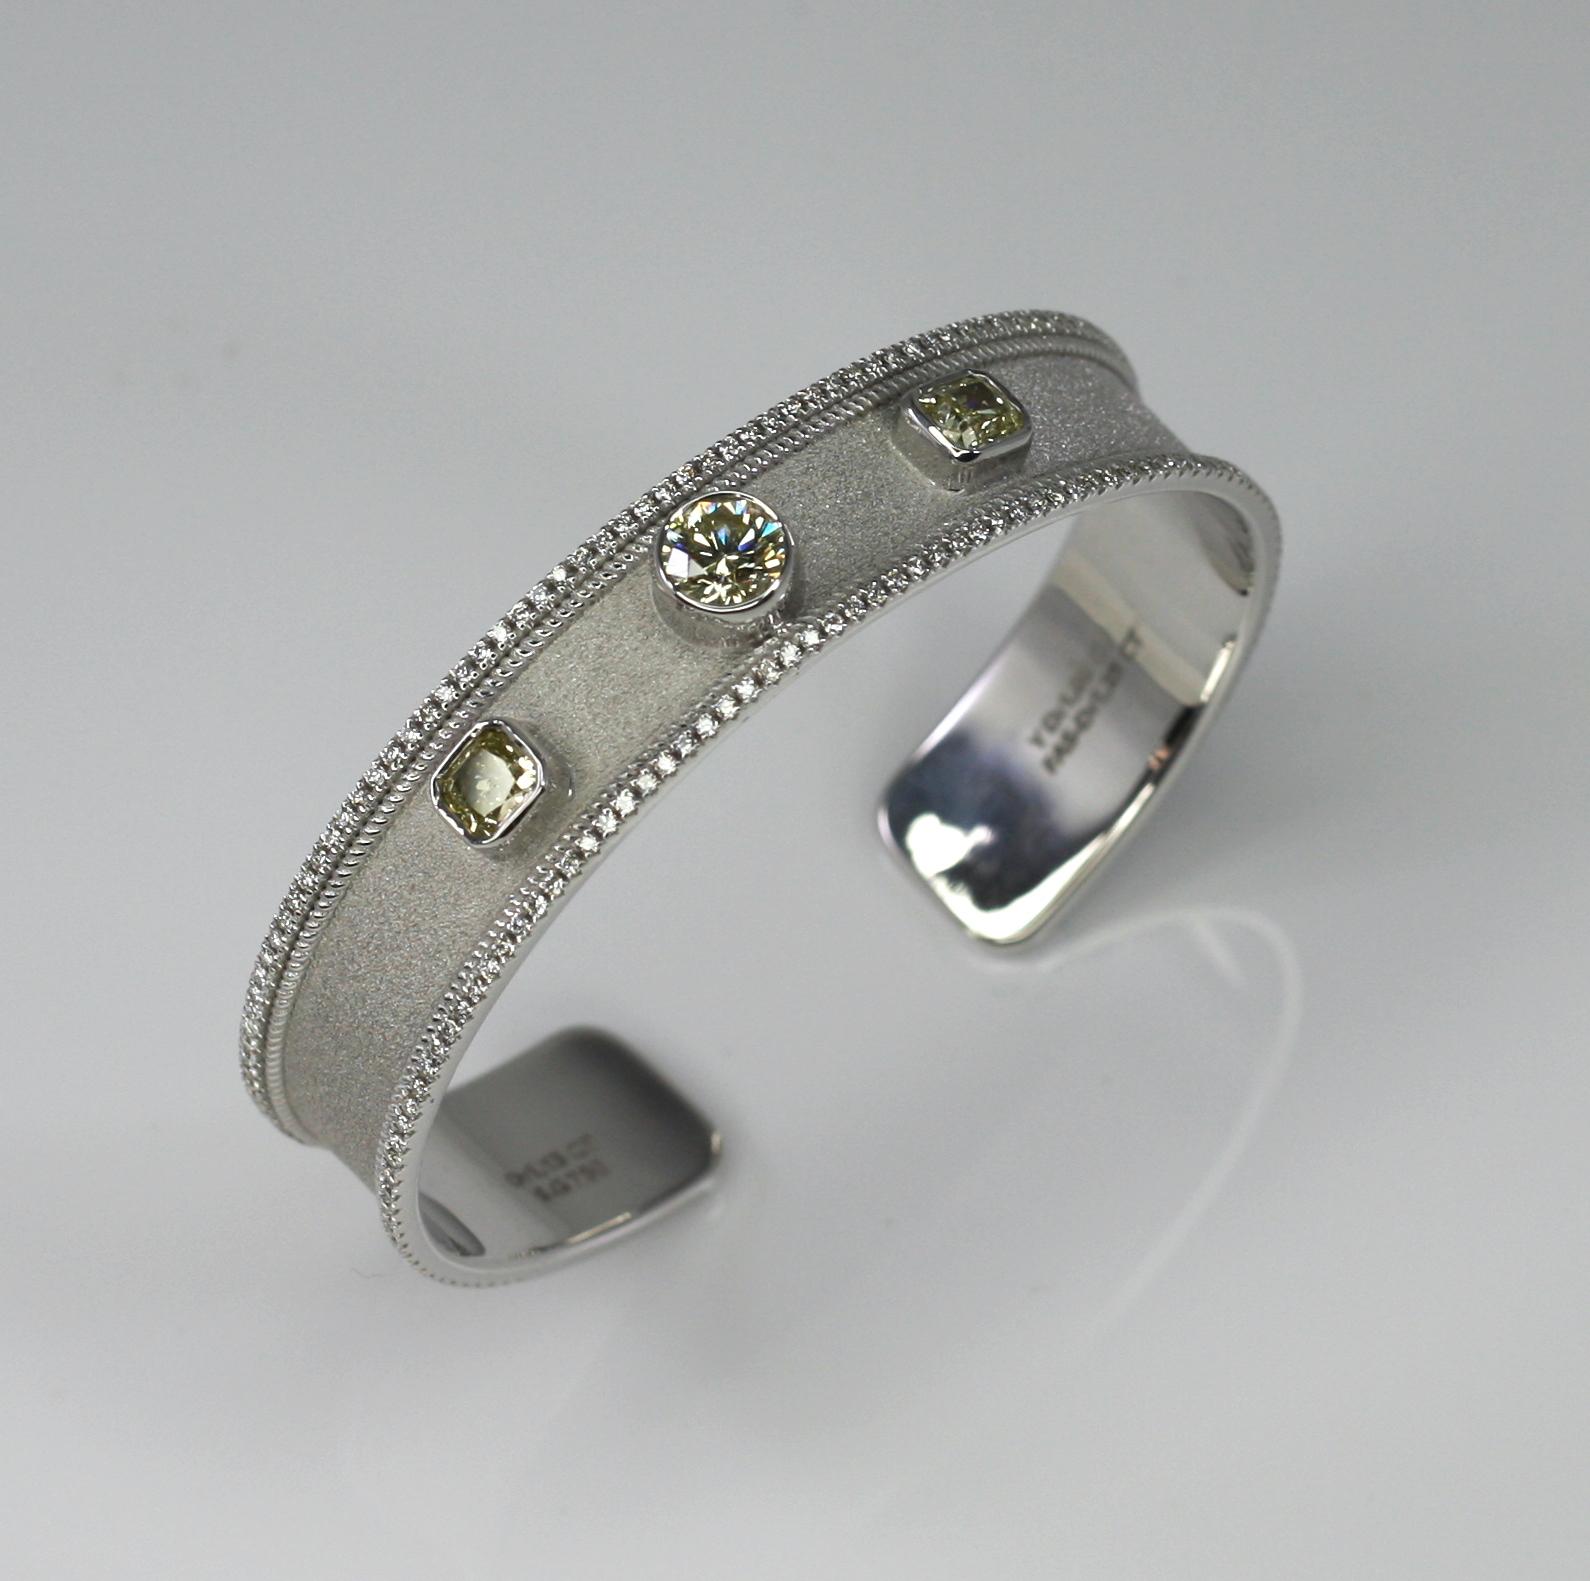 Le bracelet S.Georgios Designer est fabriqué à la main en or blanc 18 carats massif et décoré au microscope avec des fils d'or blanc et un fond en velours byzantin unique. Le bracelet présente un diamant jaune de fantaisie taille brillant de 1,15